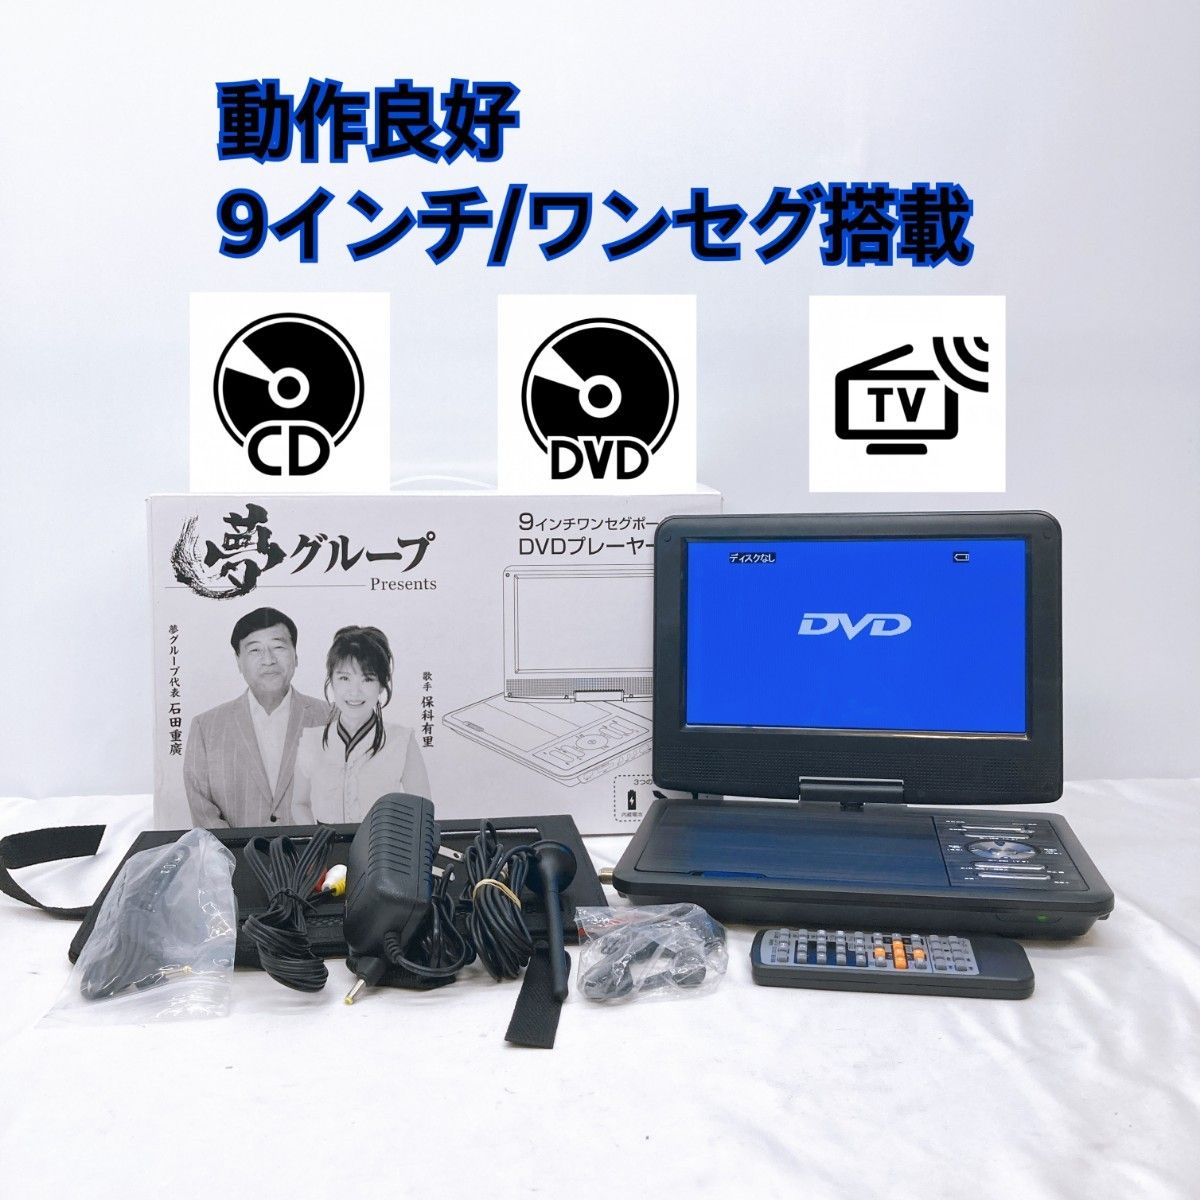 夢グループ 9インチワンセグポータブル DVDプレーヤー - DVDレコーダー